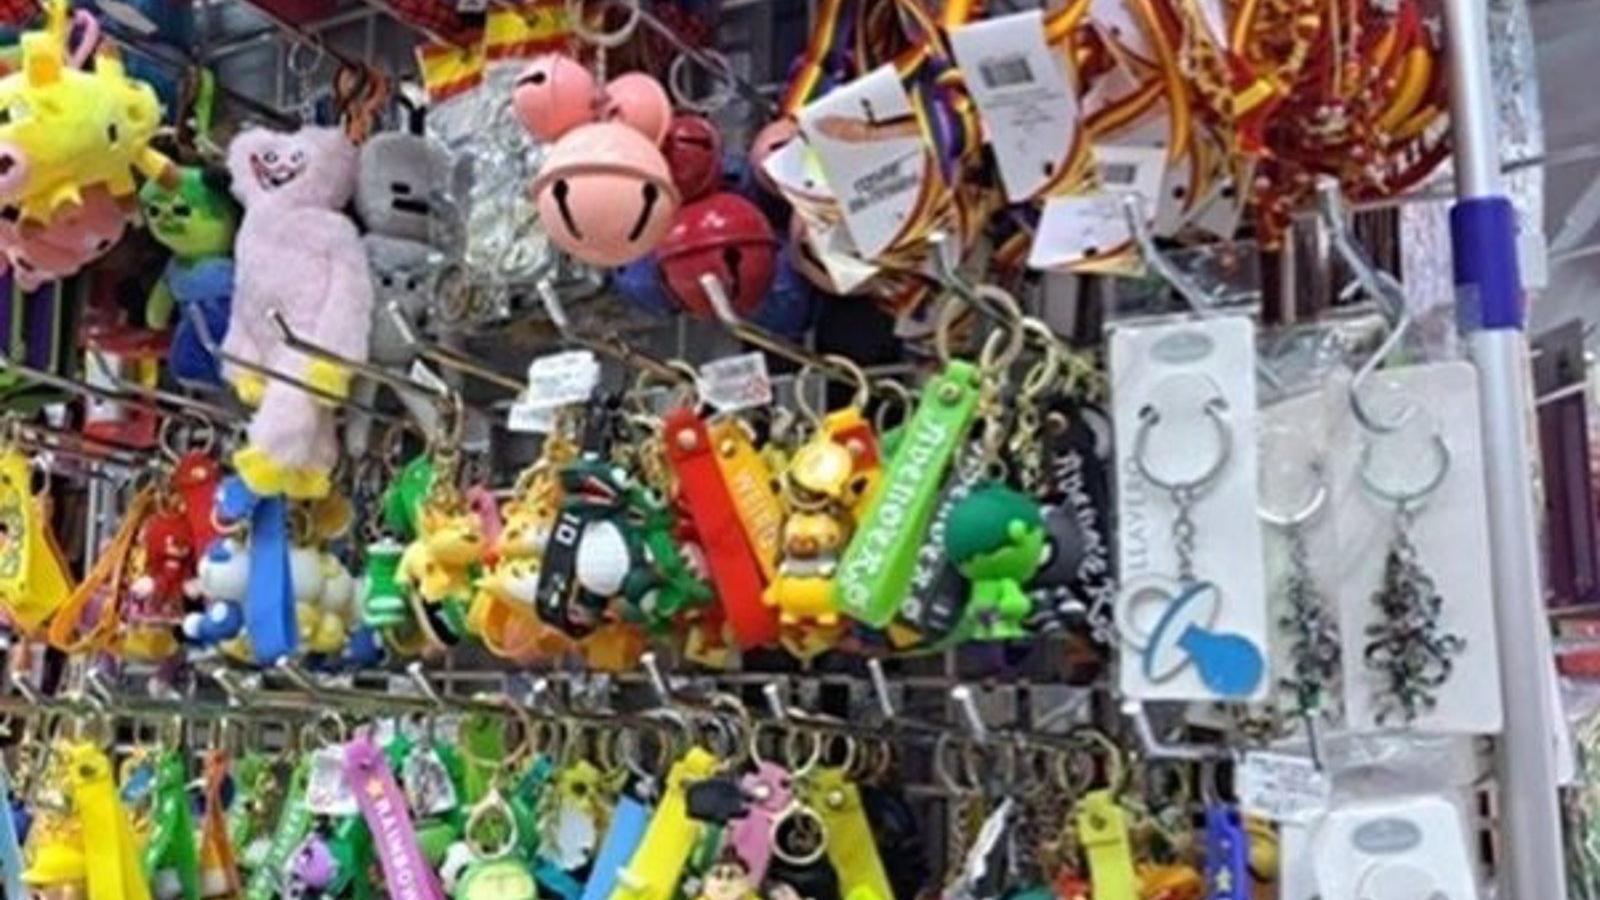 Más de 3.800 juguetes y 2.200 artículos pirotécnicos ilegales requisados en varios locales de cuatro distritos